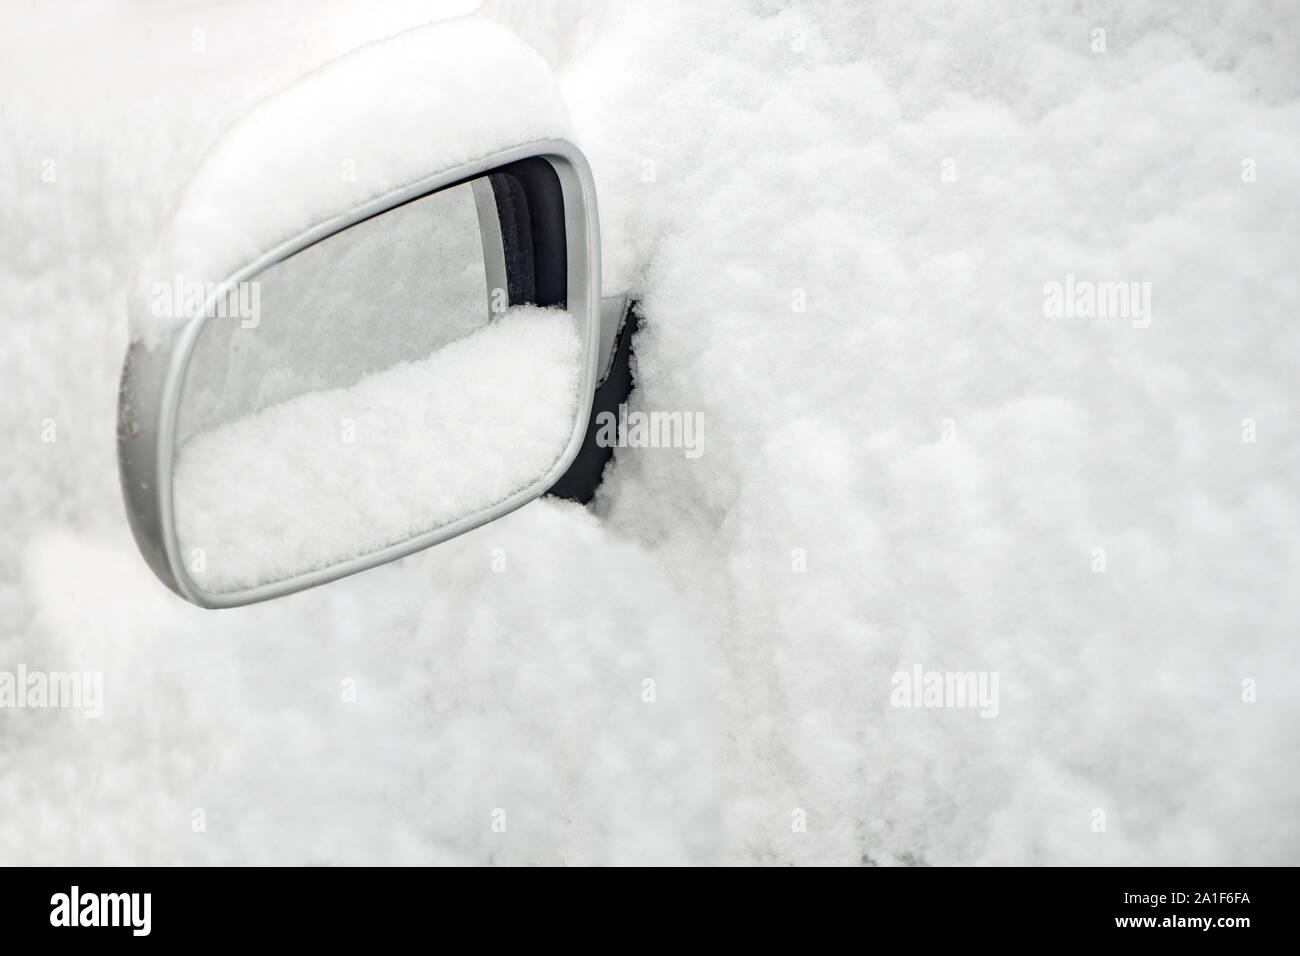 Auto unter dem schnee -Fotos und -Bildmaterial in hoher Auflösung – Alamy